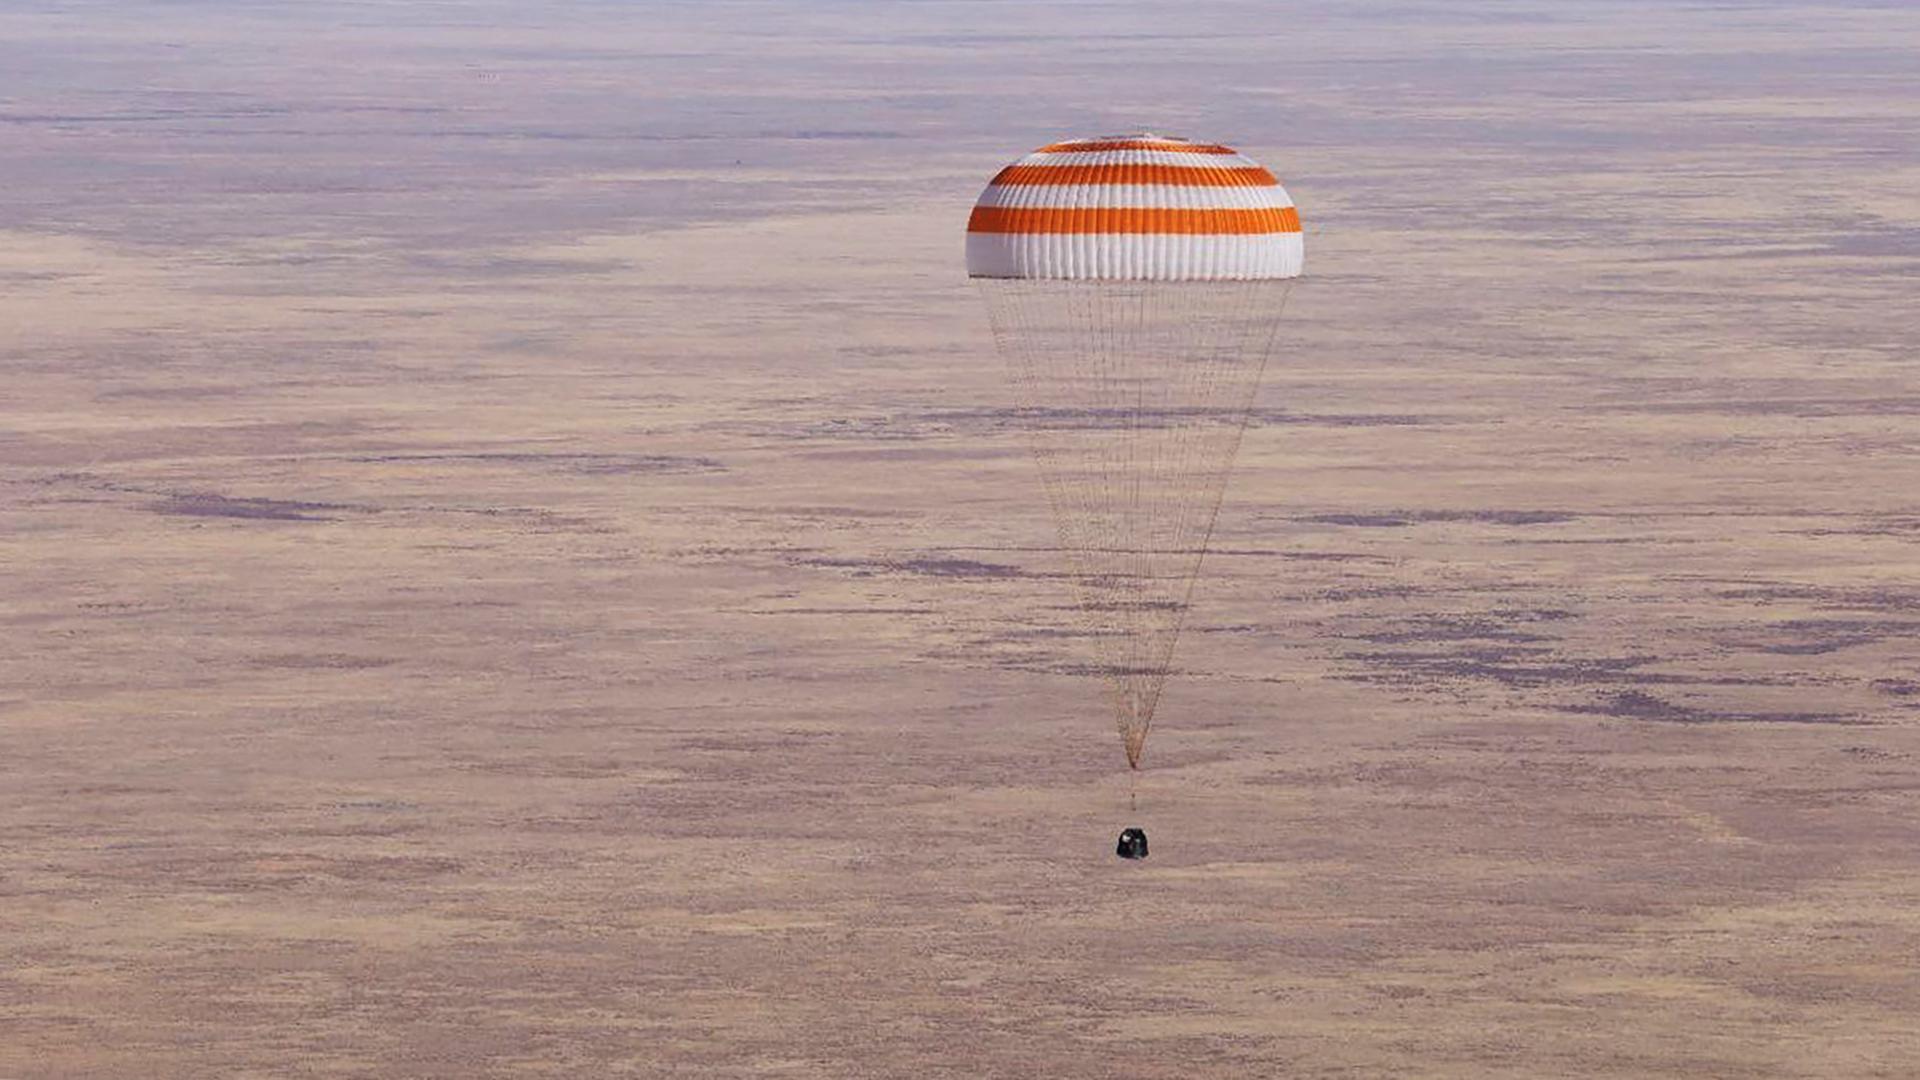 Raumfahrt - Drei russische Kosmonauten von der ISS zurück auf der Erde